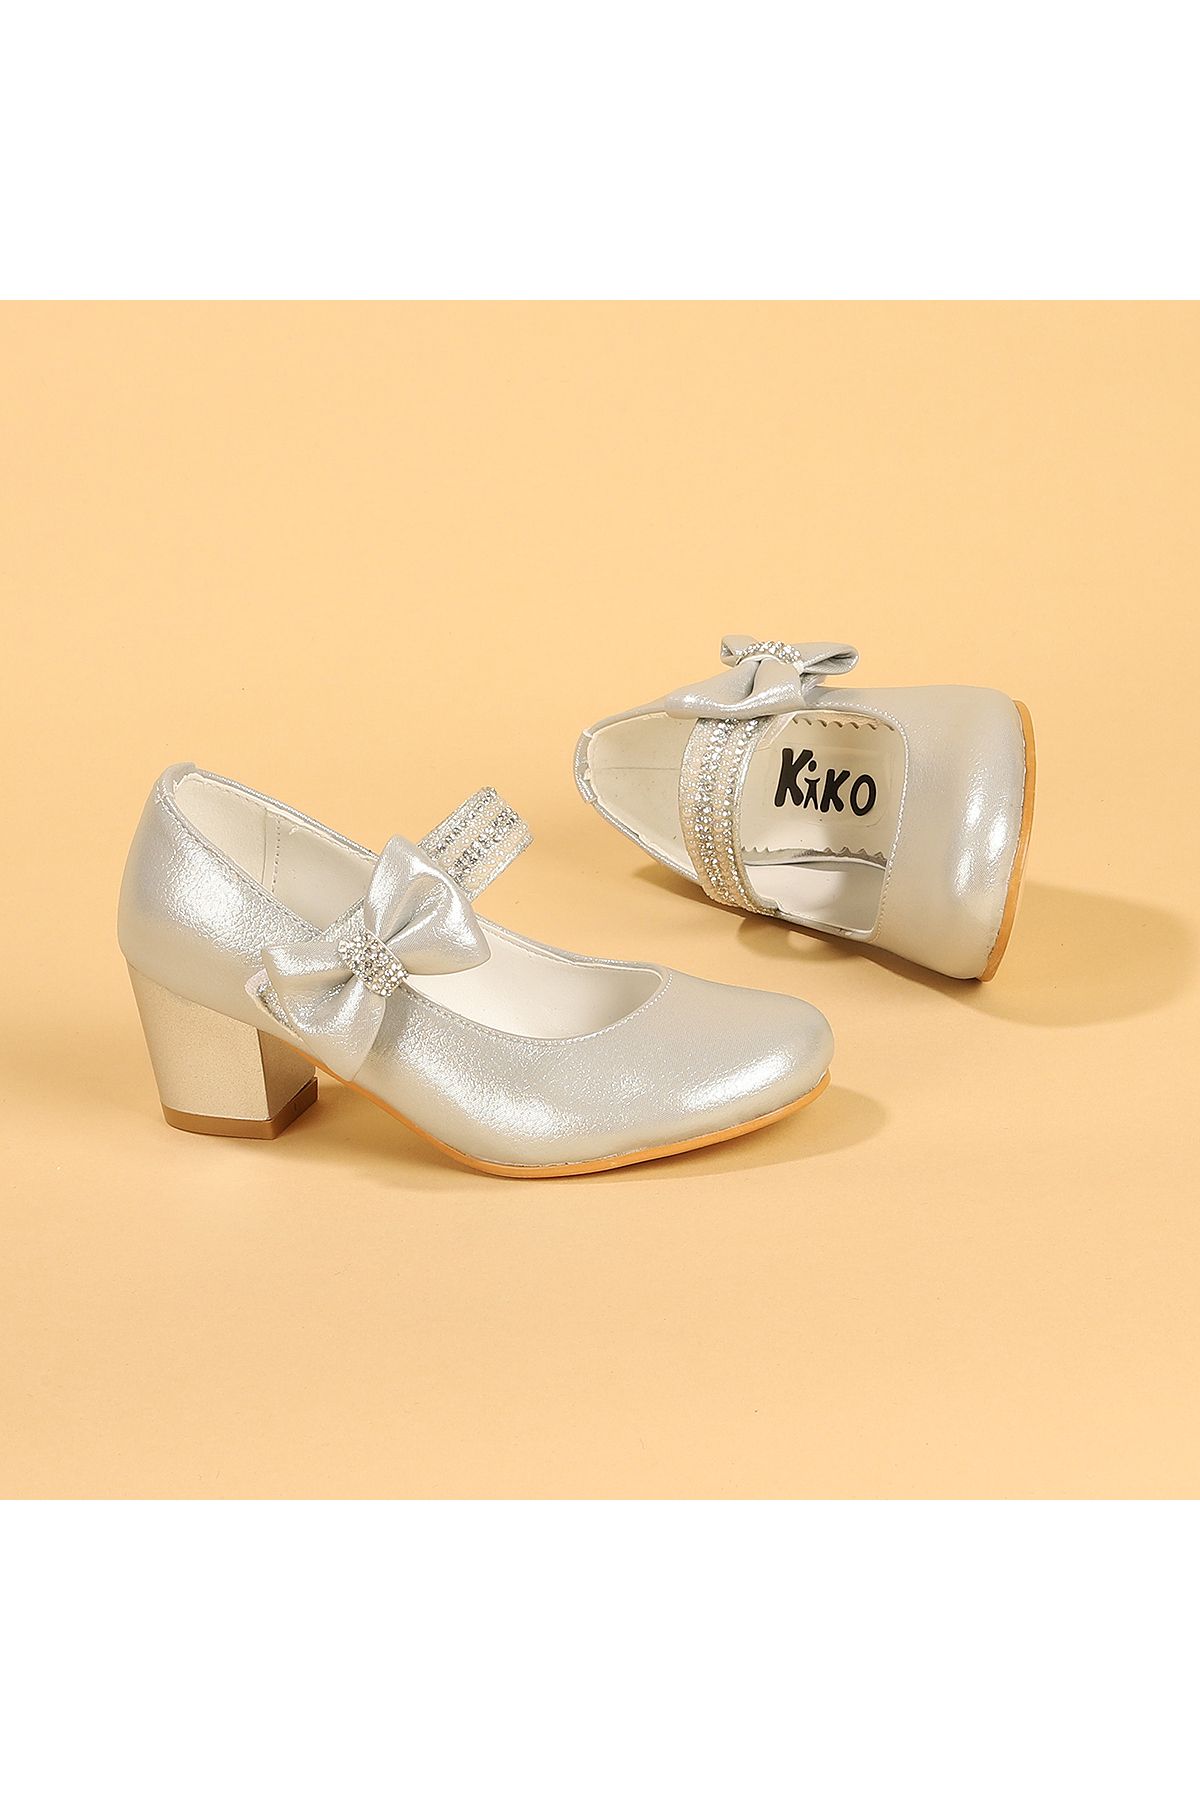 Kiko Kids Günlük Kız Çocuk 4 Cm Topuklu Babet Ayakkabı